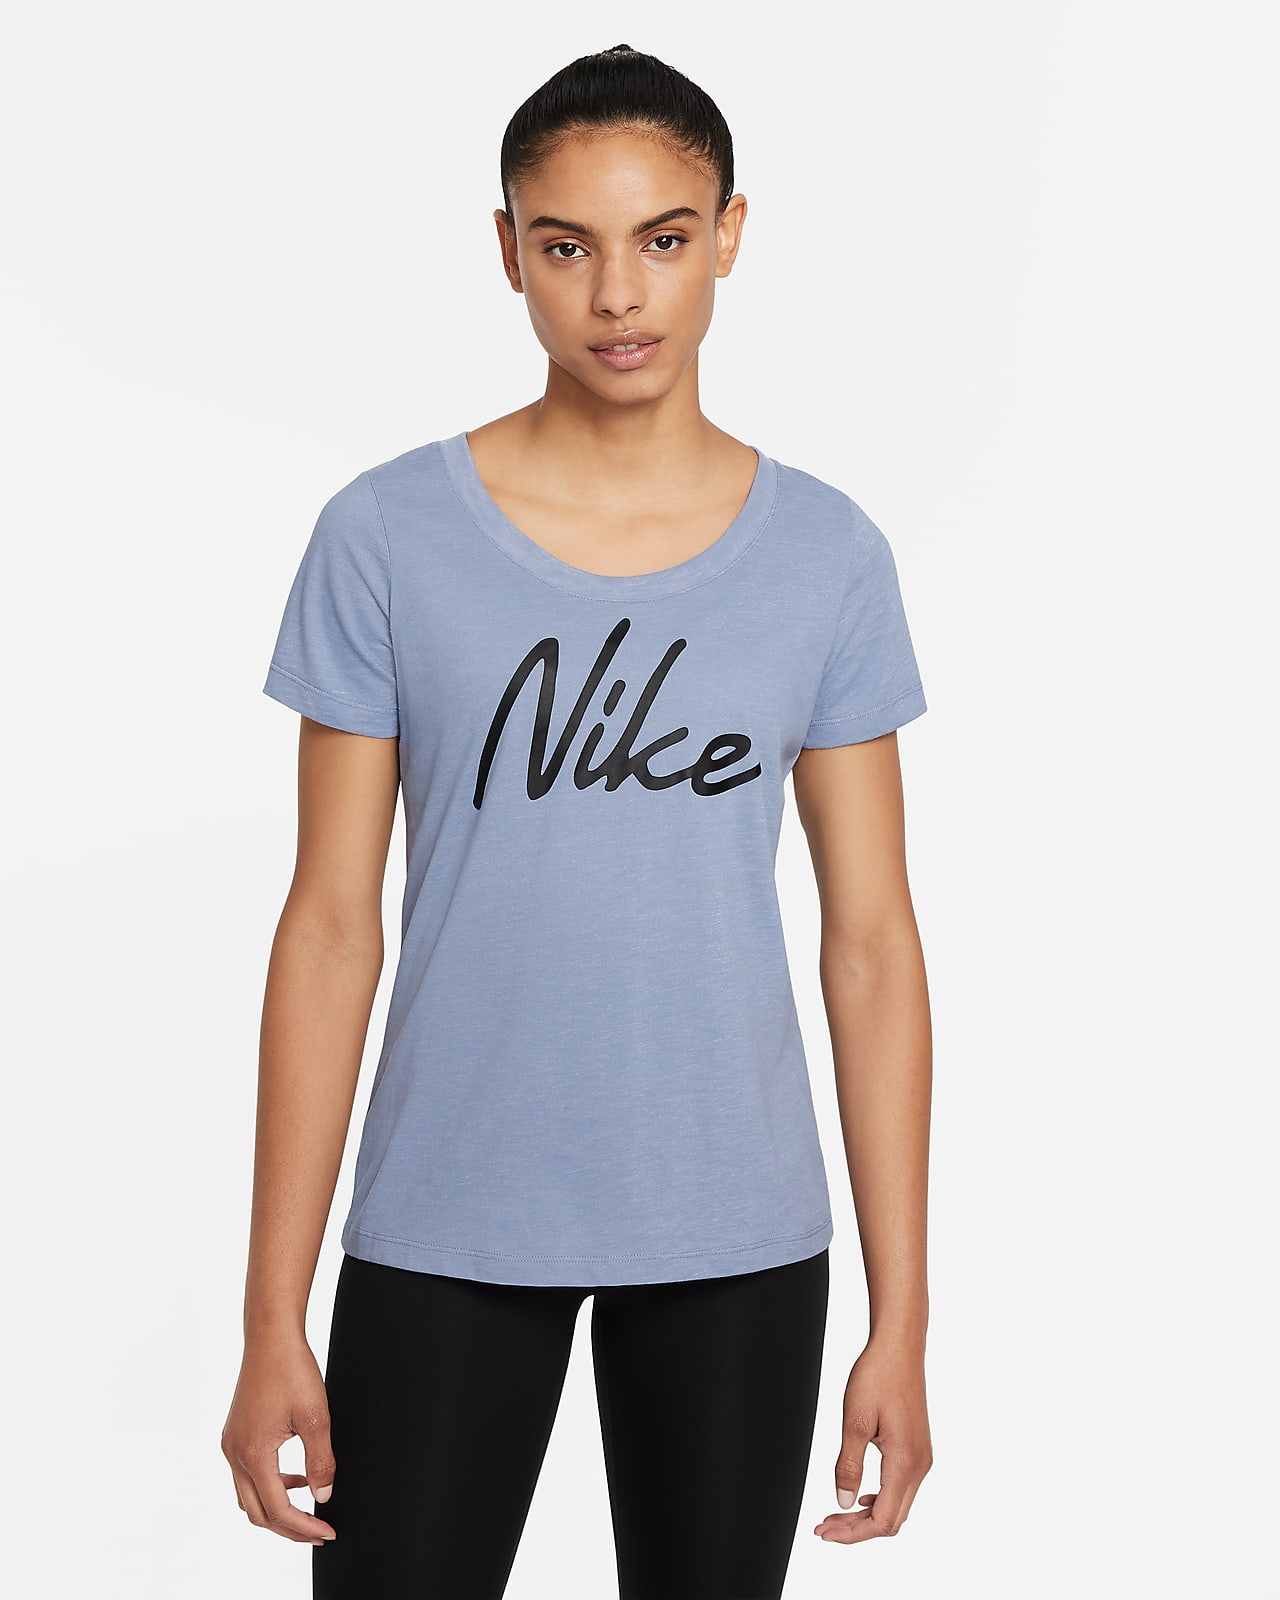 Nike Dri-FIT Women's Logo Training T-Shirt